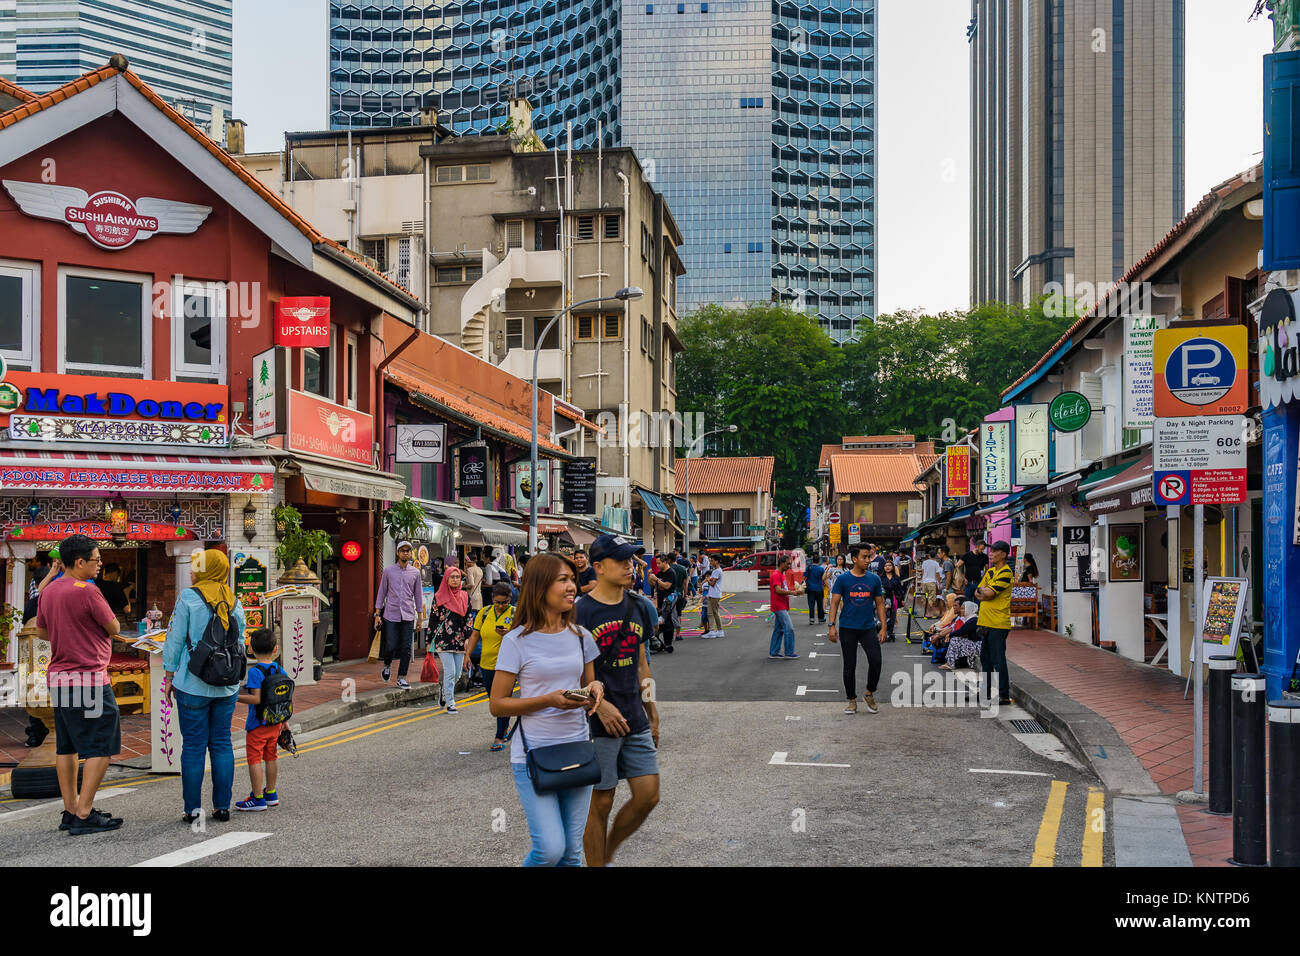 Singapour - septembre 2, 2017 : les visiteurs à pied autour de la rue Haji Lane bien connu en tant qu'arts de la rue et à la mode pour les jeunes et touri Banque D'Images